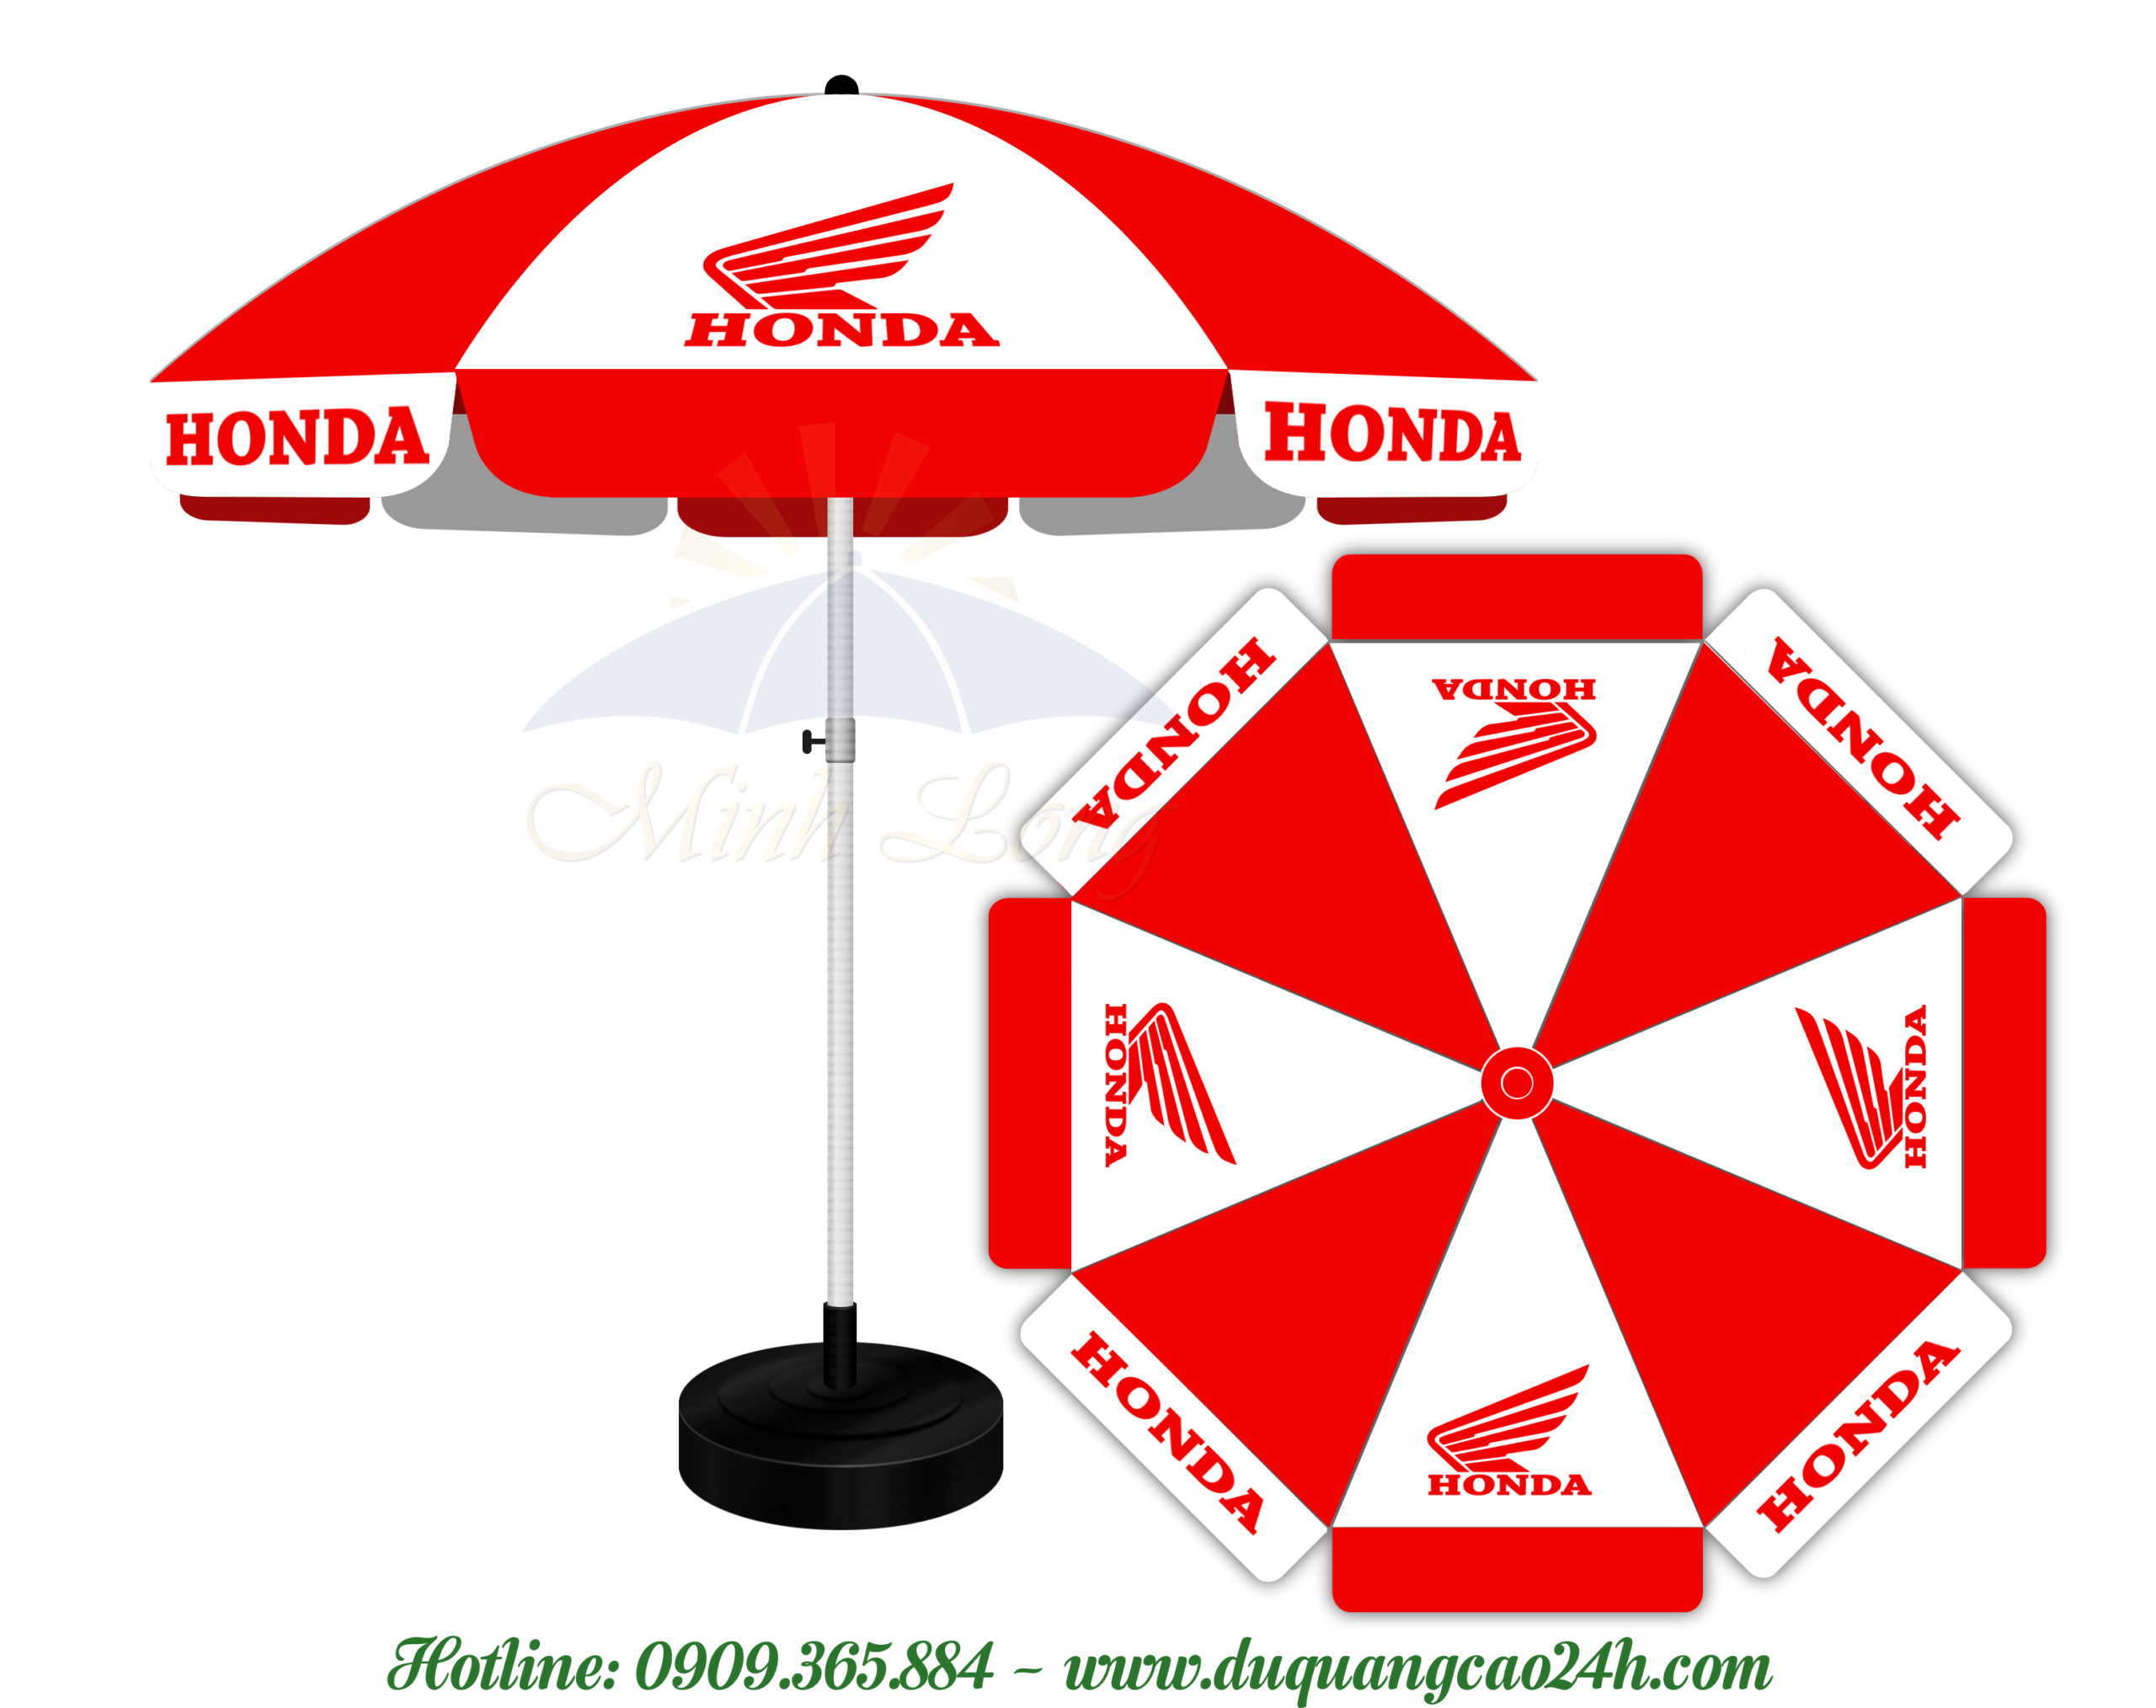 Dù quảng cáo Honda